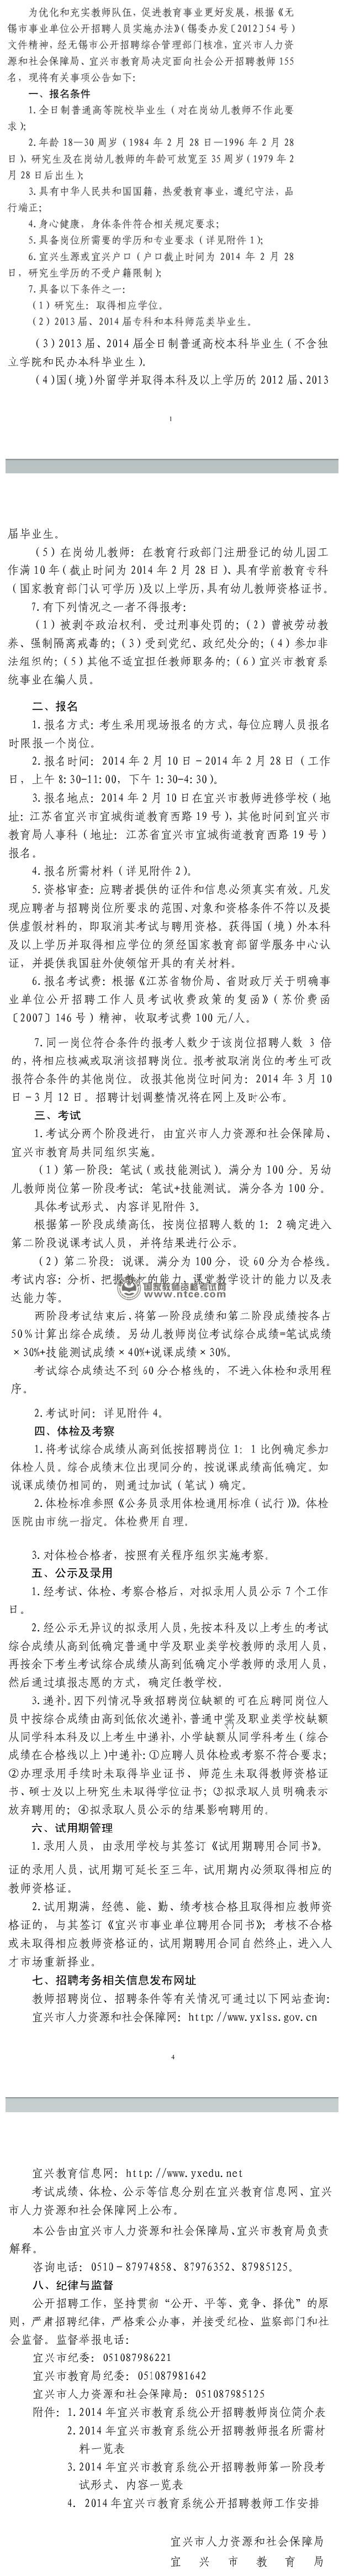 江苏省宜兴市2014年公开招聘教师155名简章